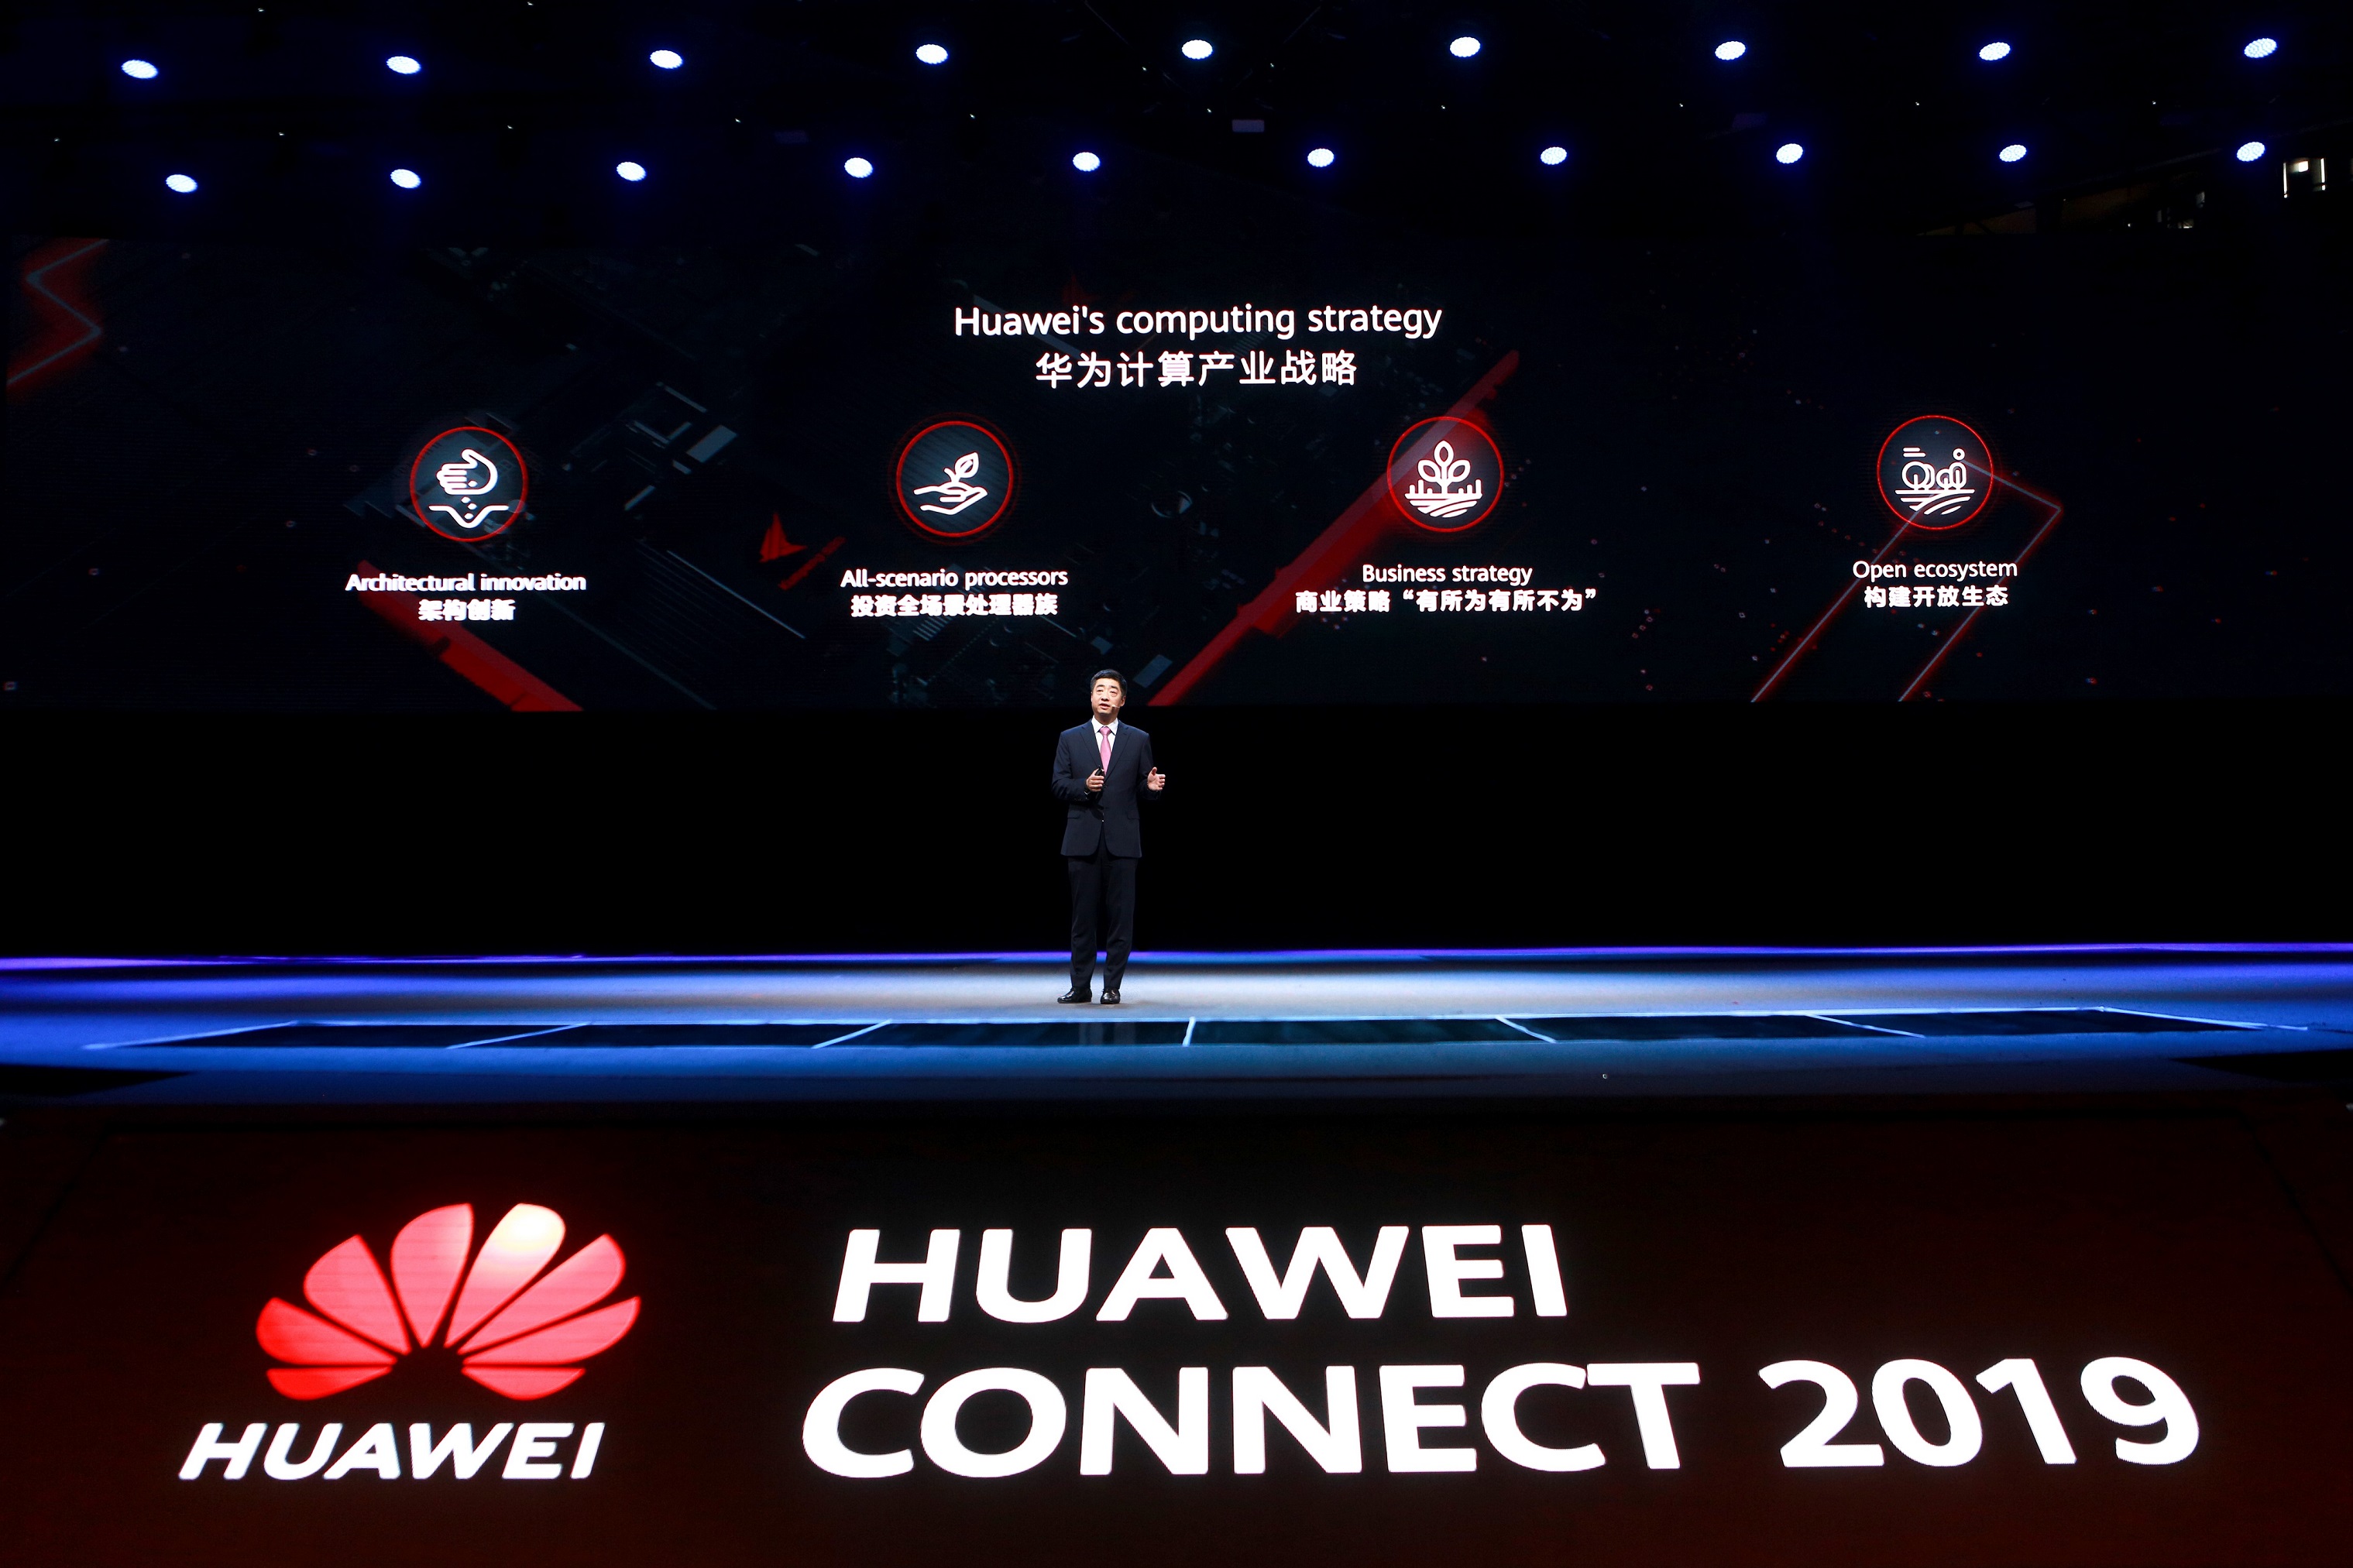 Huawei's Deputy Chairman Ken Hu